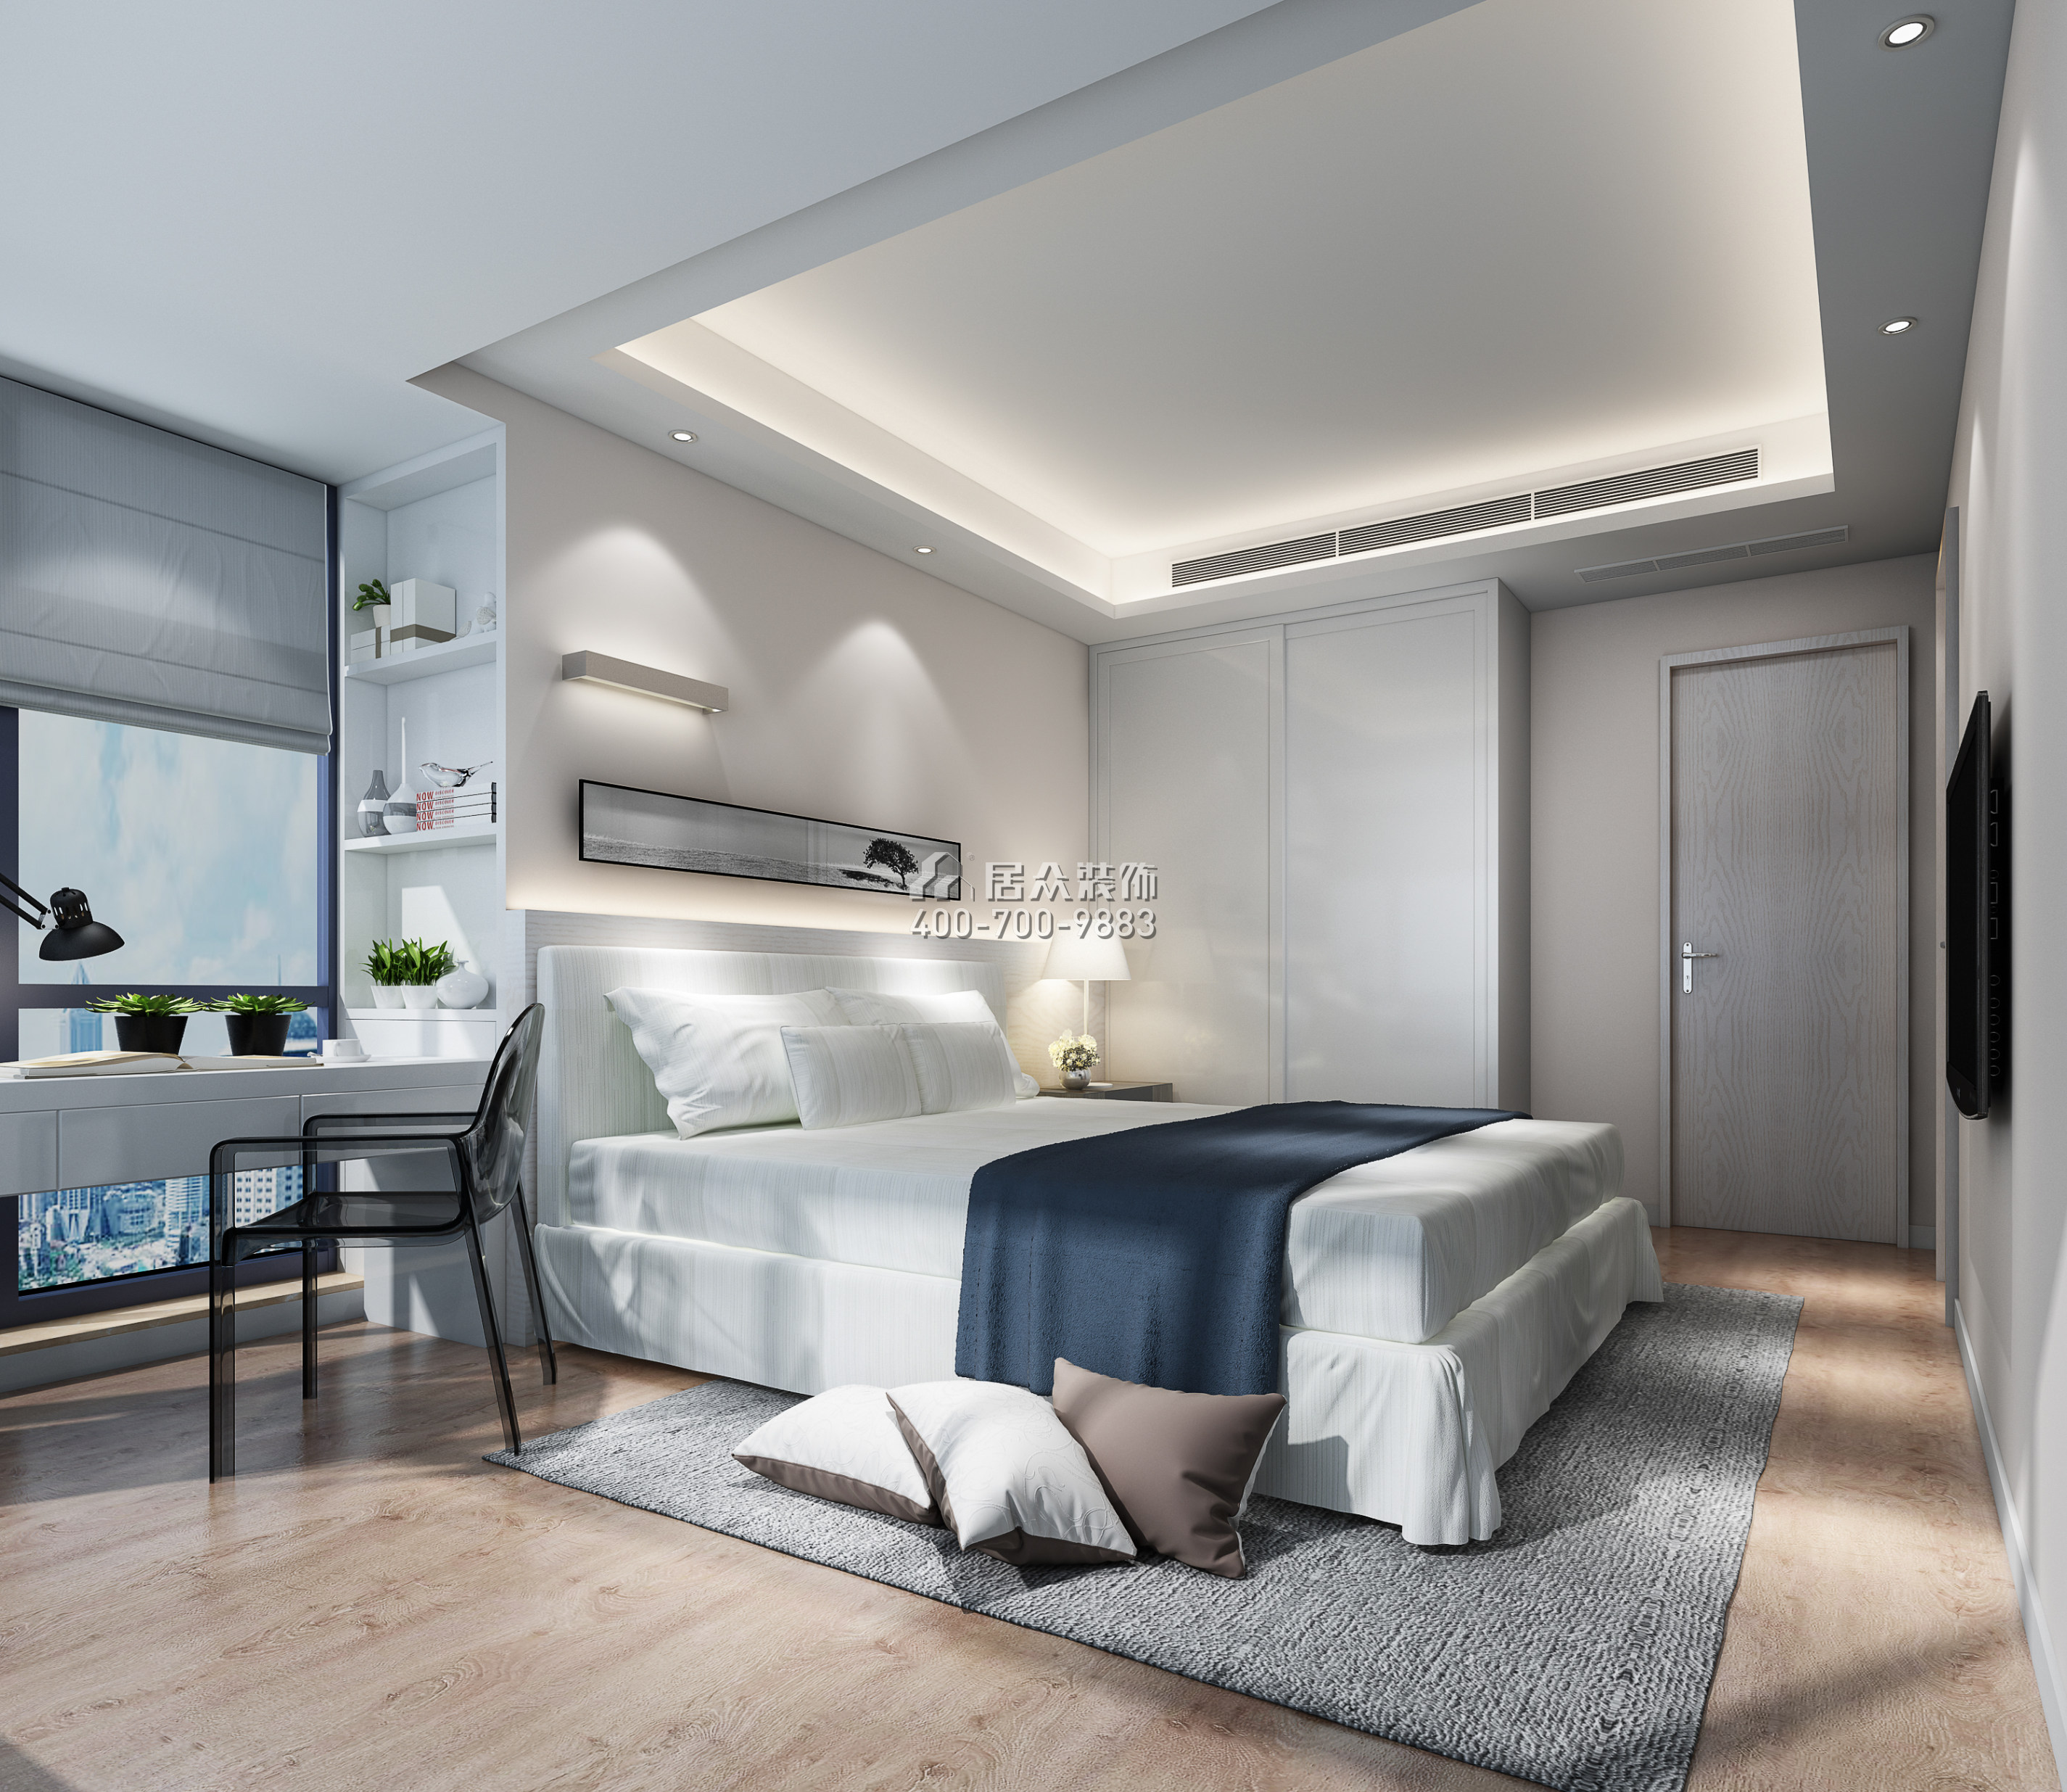 前海丹华园100平方米现代简约风格平层户型卧室装修效果图